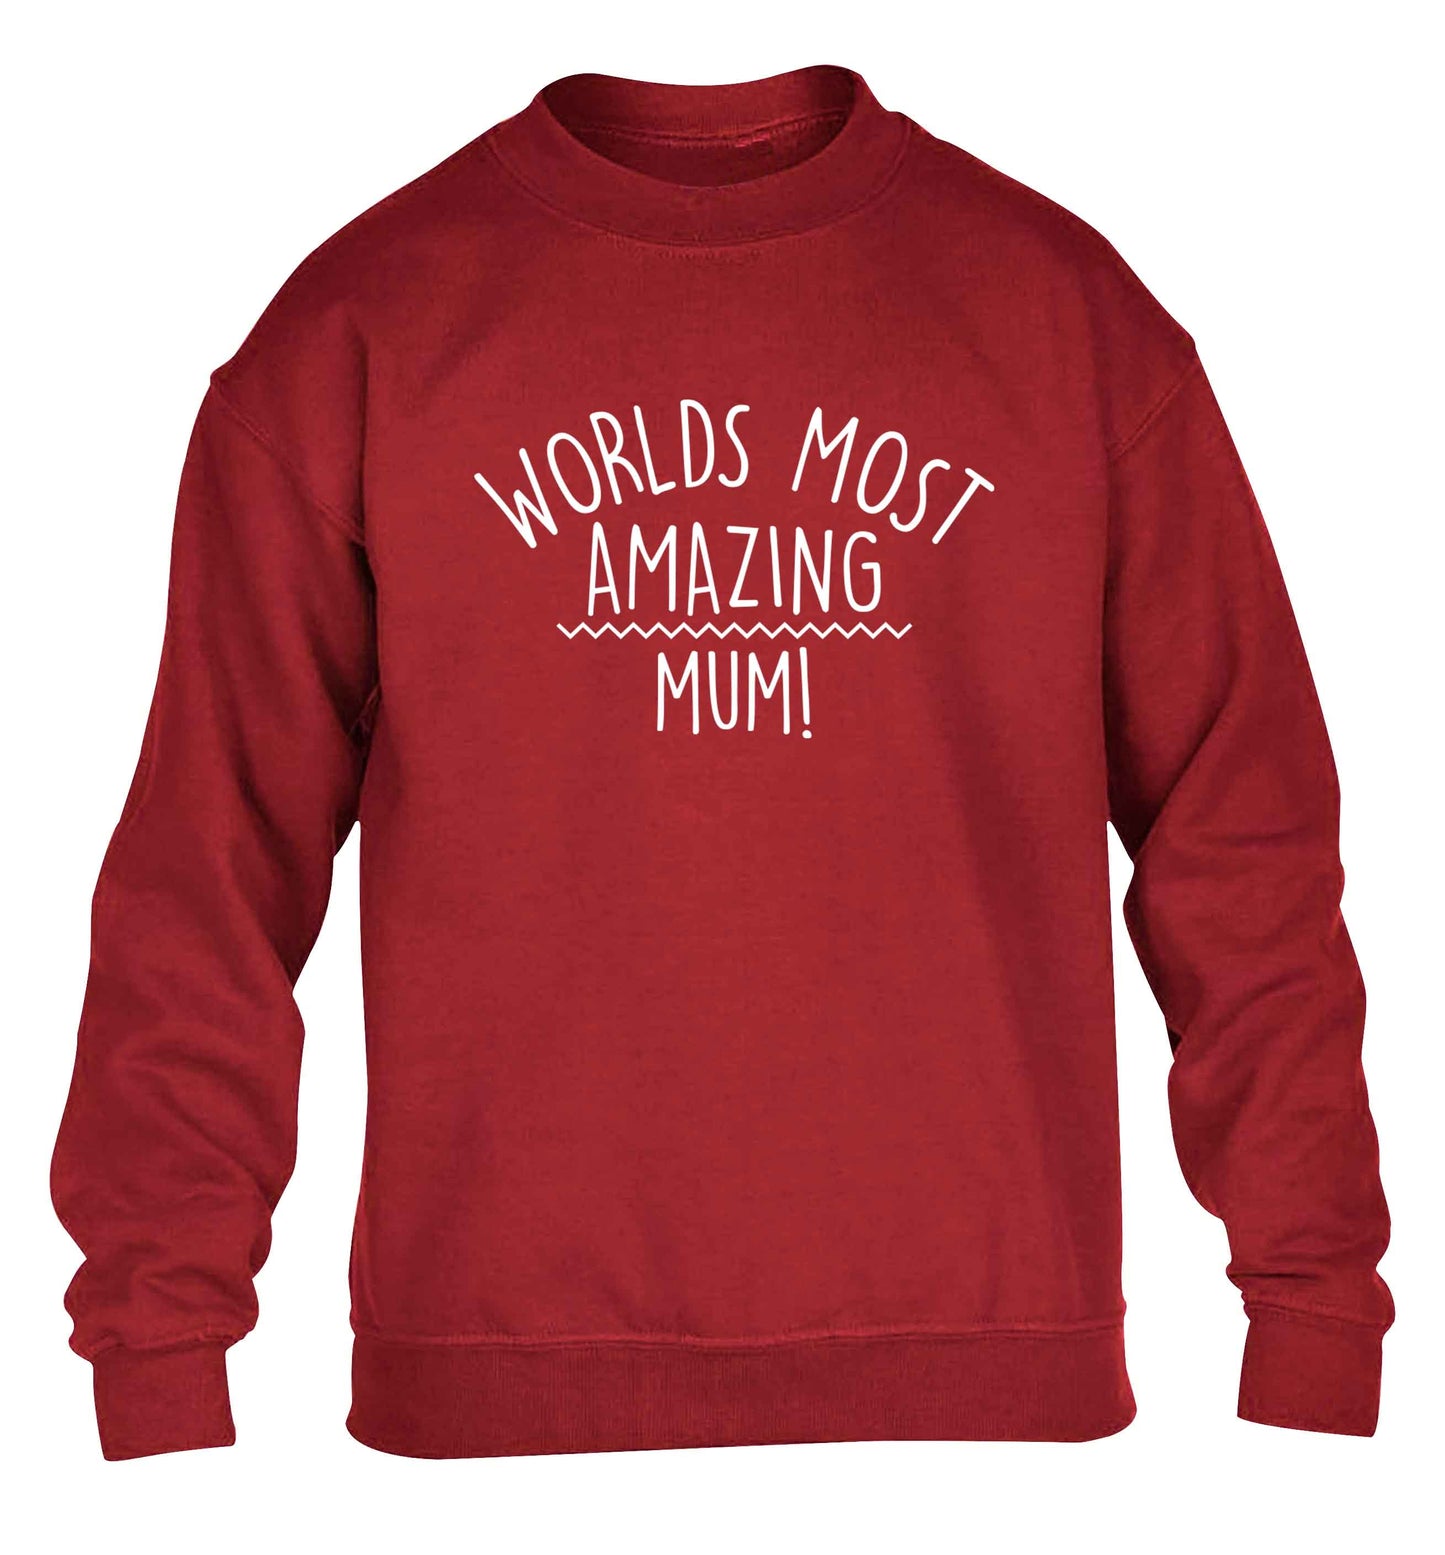 Worlds most amazing mum children's grey sweater 12-13 Years